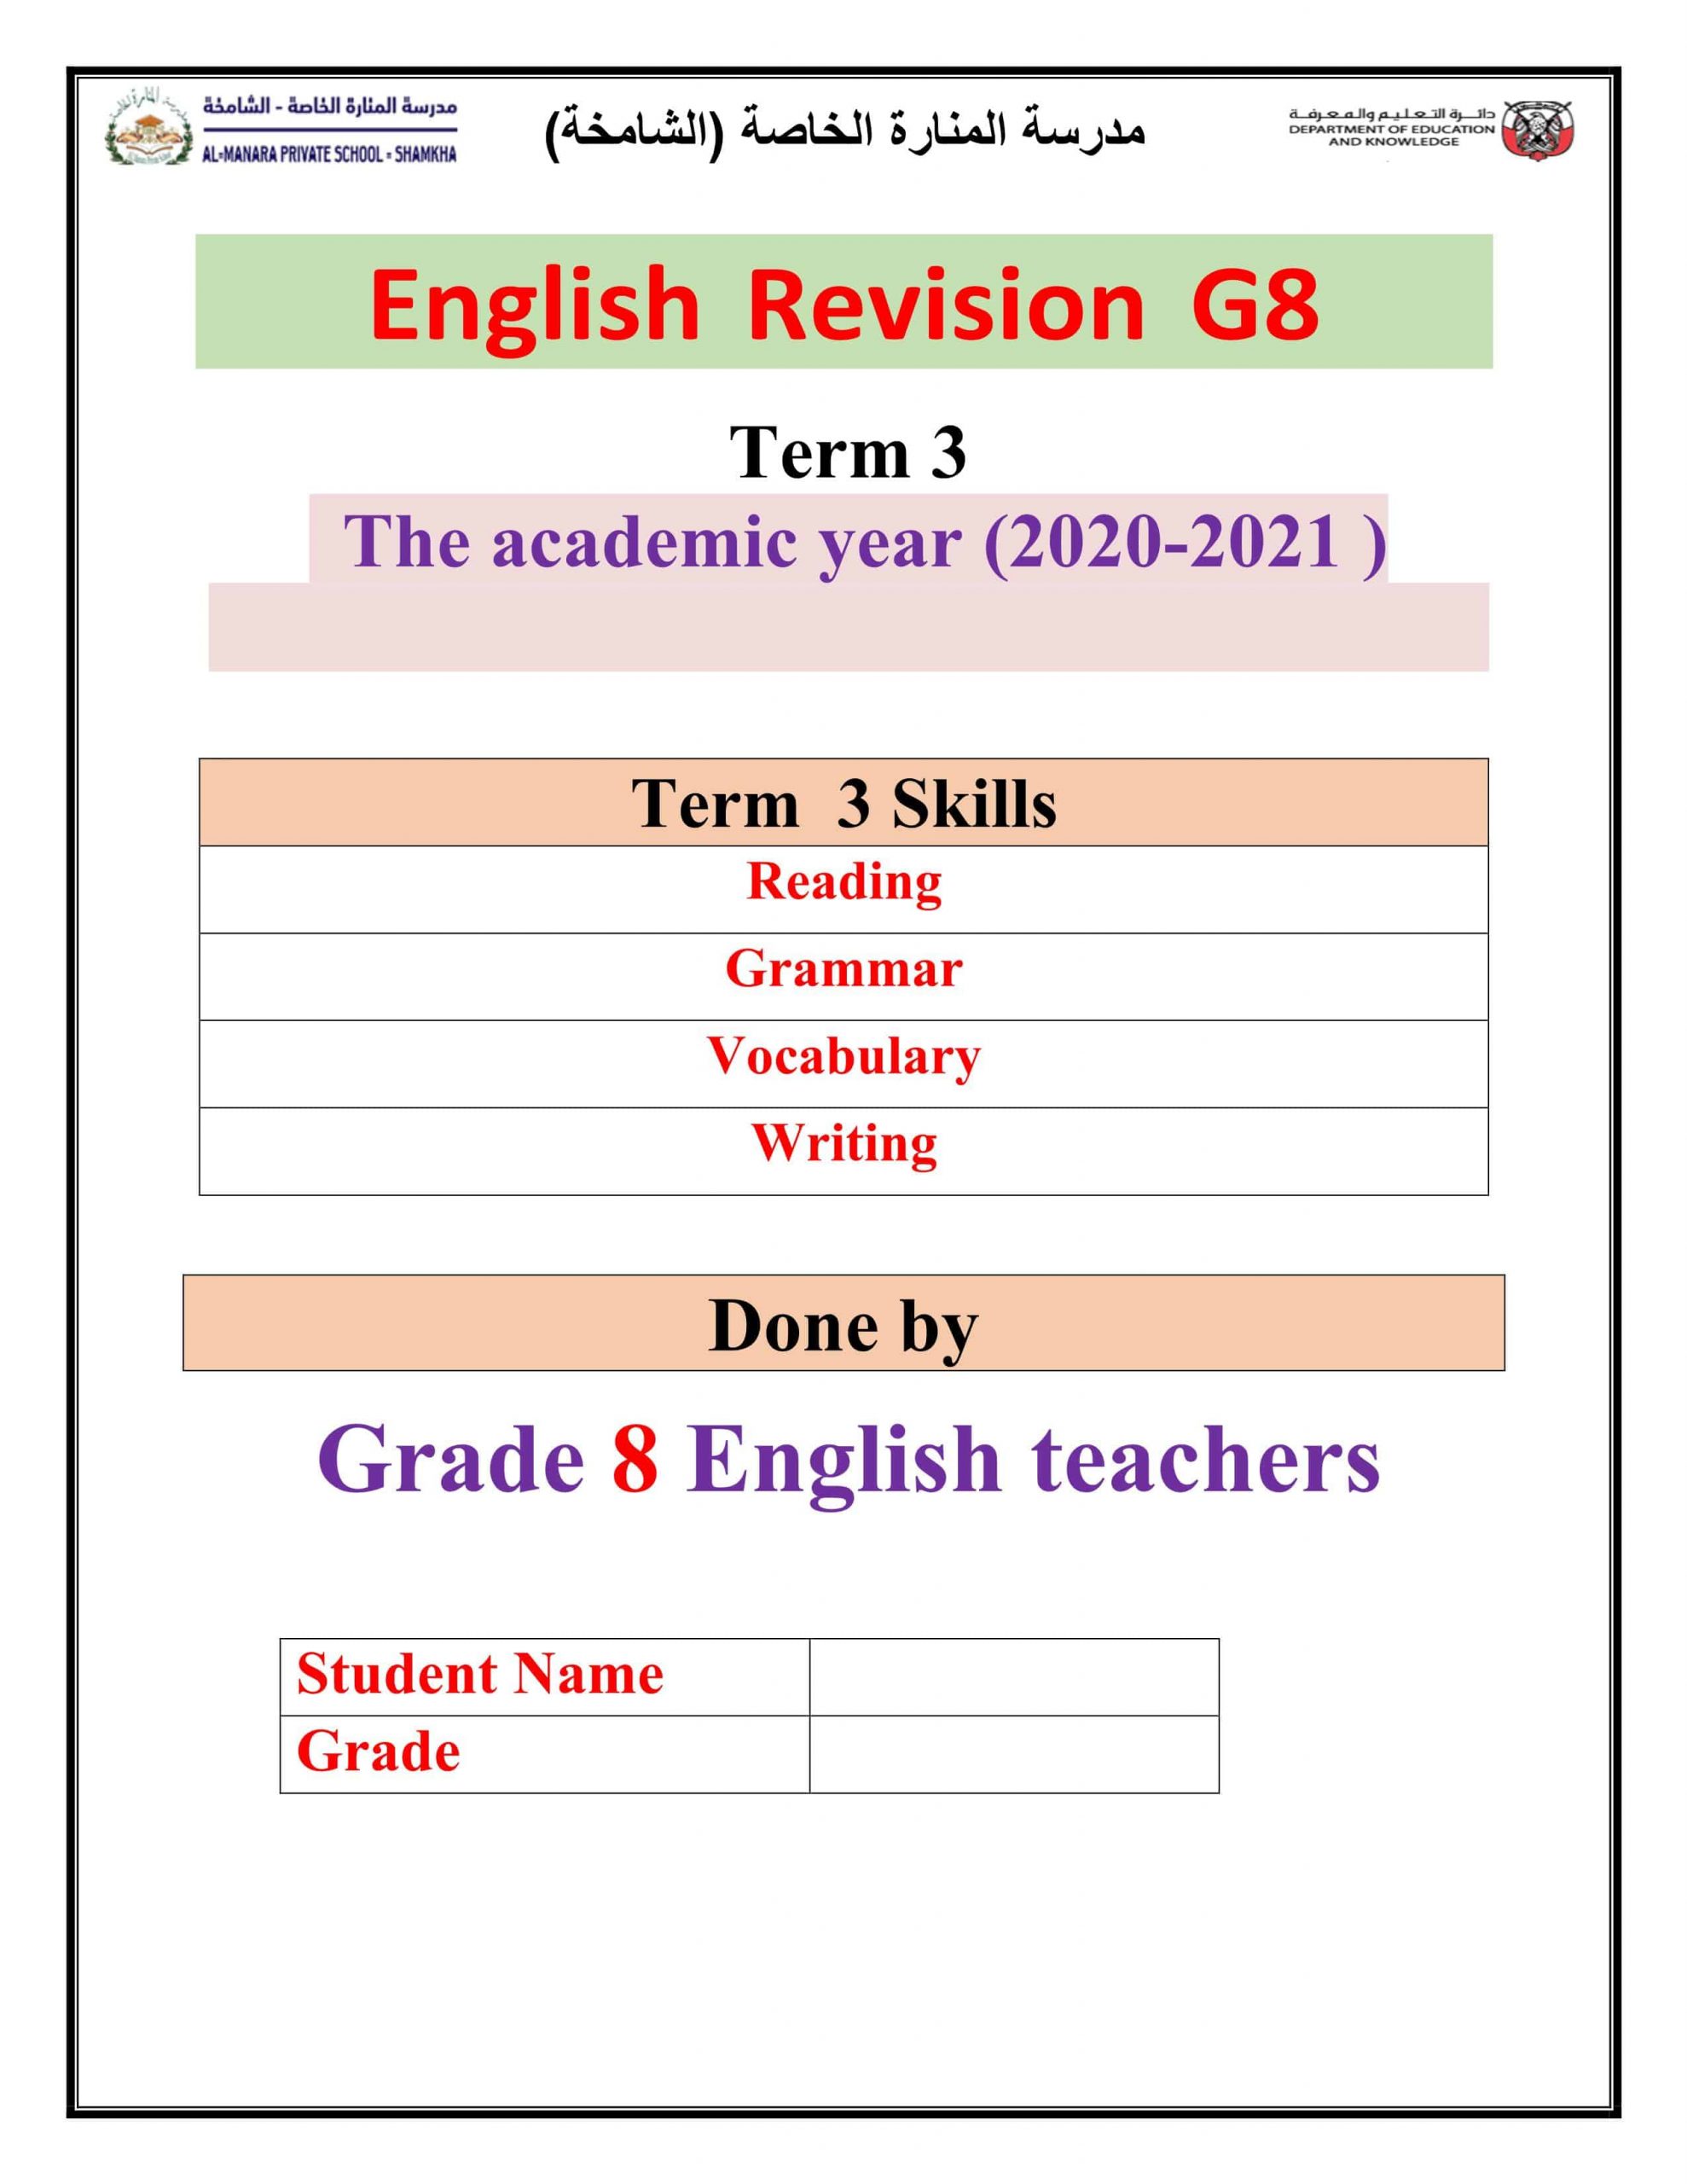 أوراق عمل English Revision الصف الثامن مادة اللغة الإنجليزية 